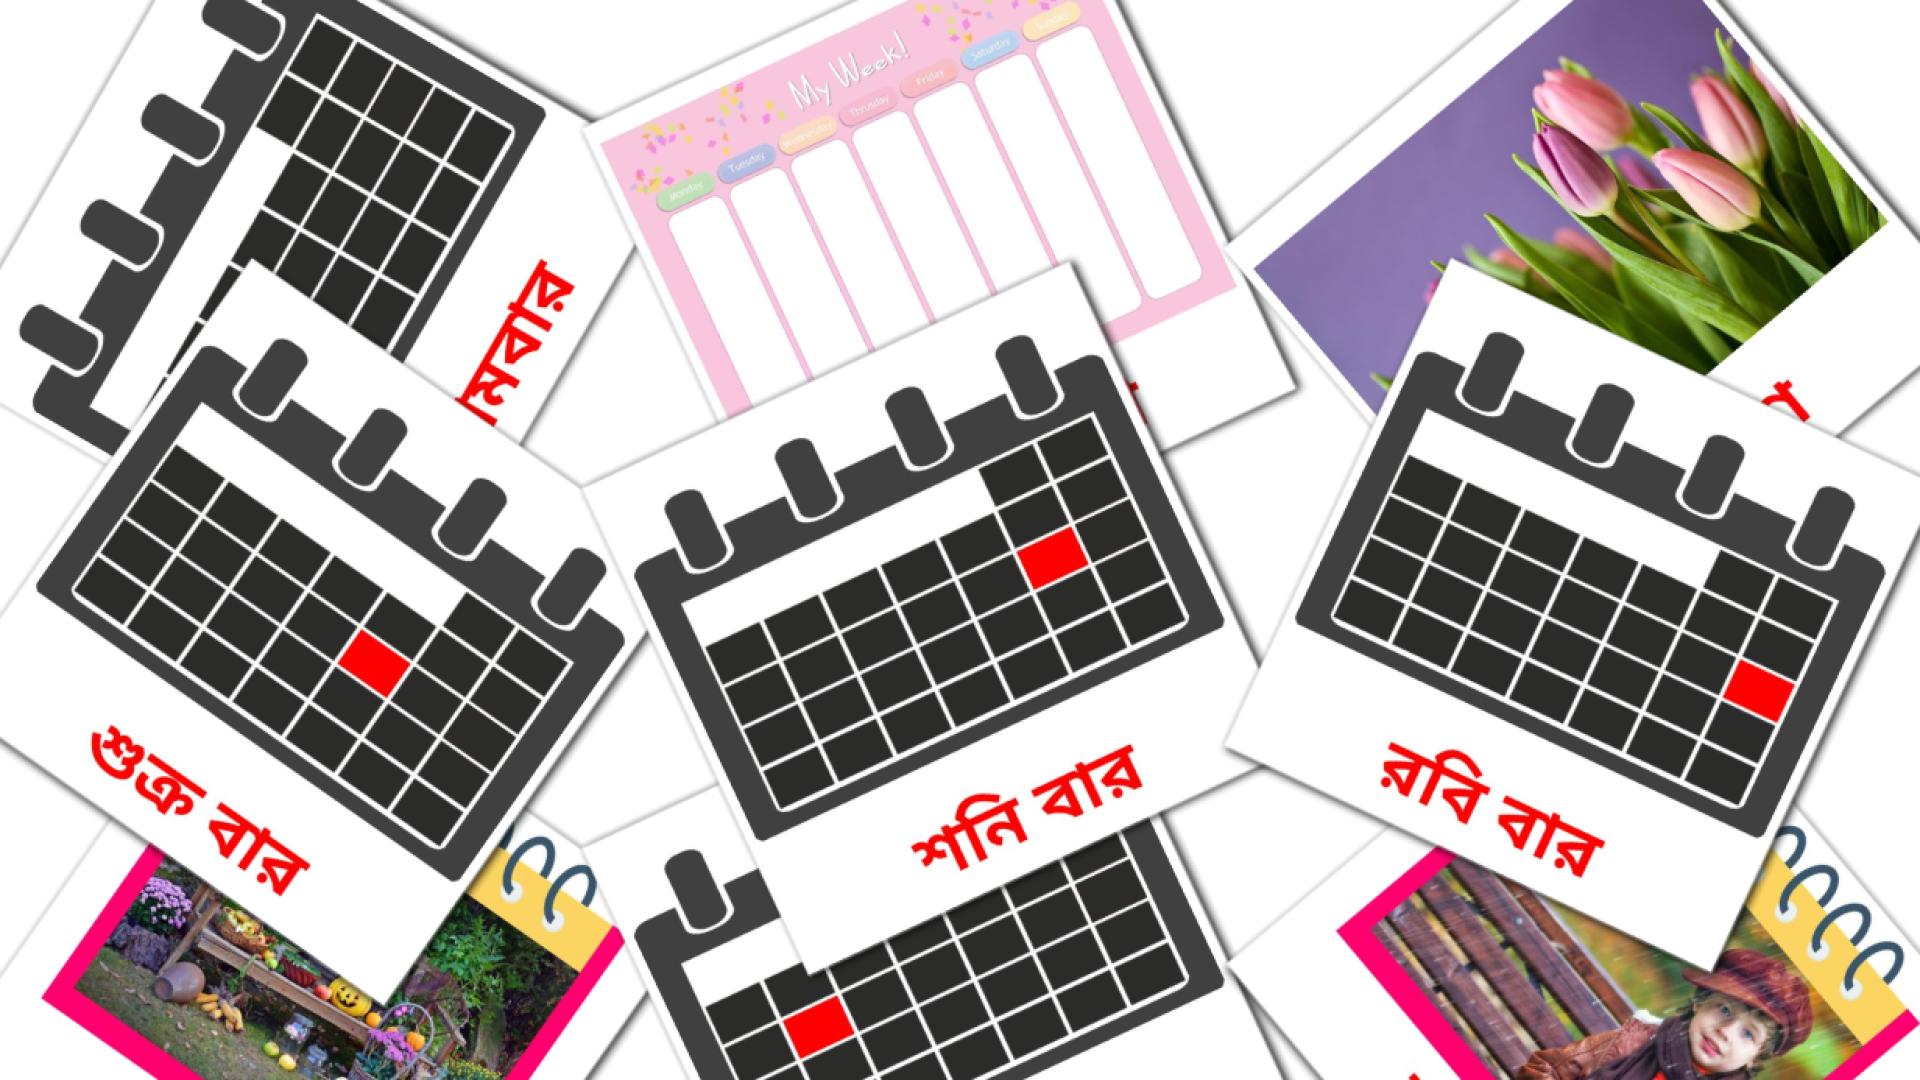 Bengalisch পঞ্জিকাe Vokabelkarteikarten